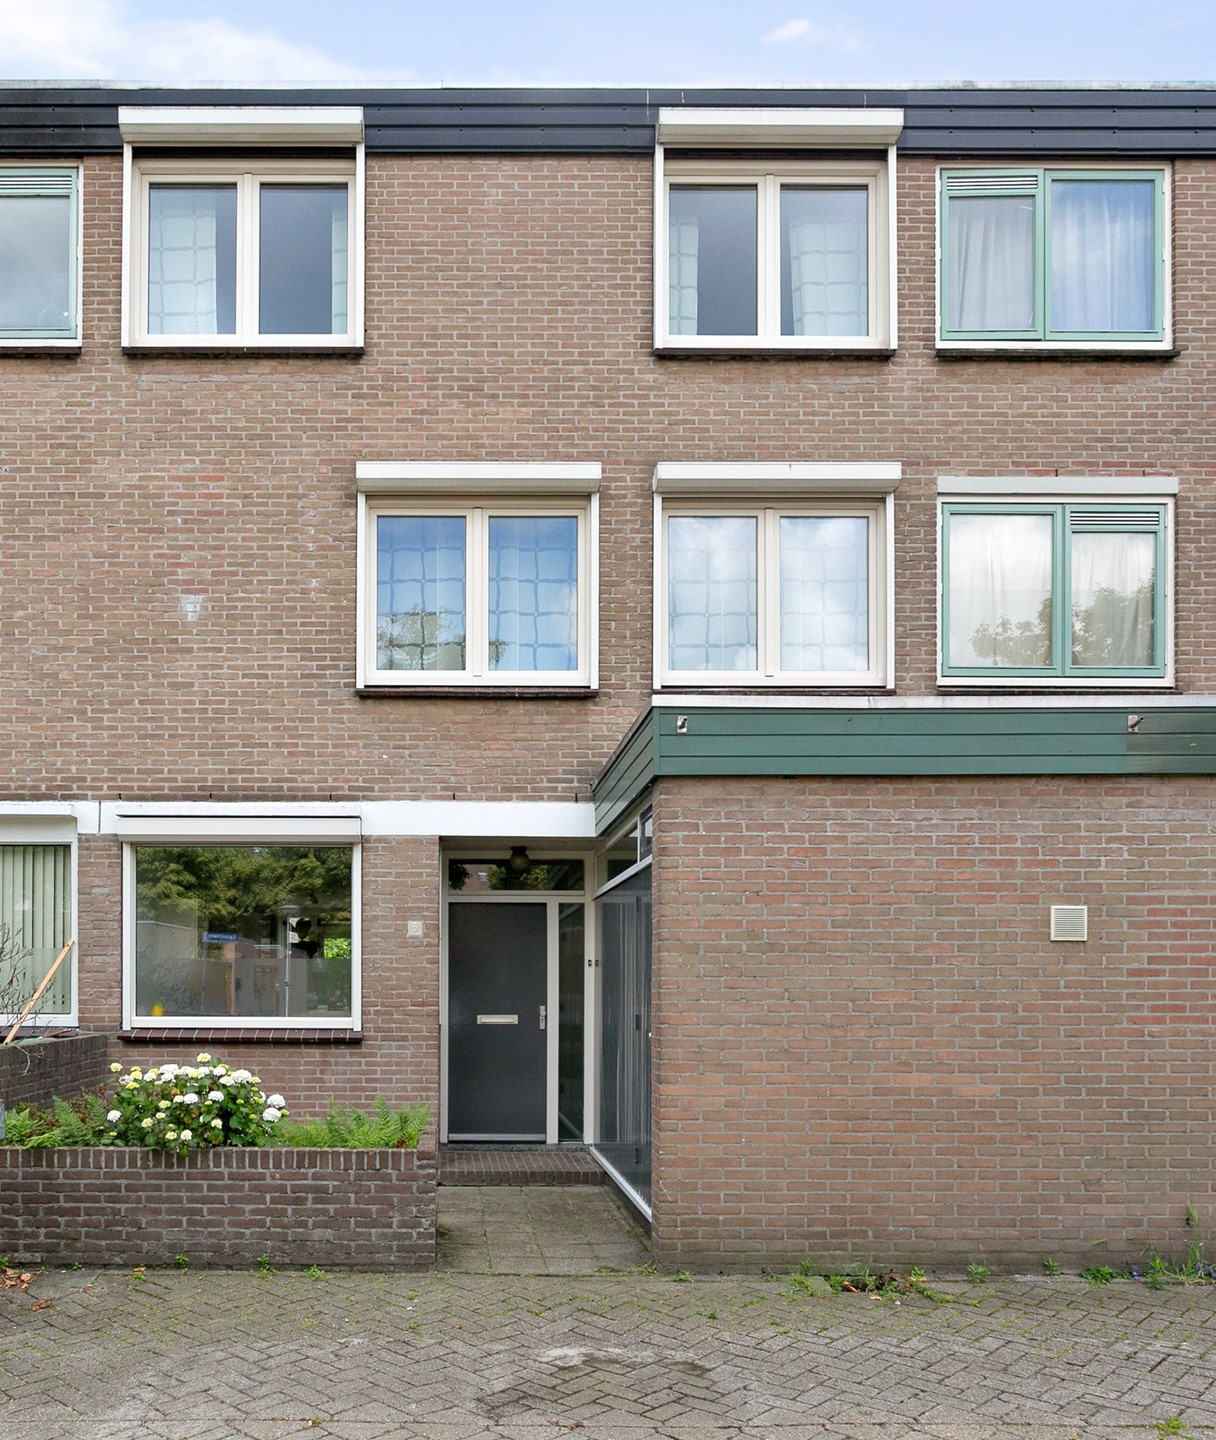 Bekijk foto 1/37 van house in Eindhoven